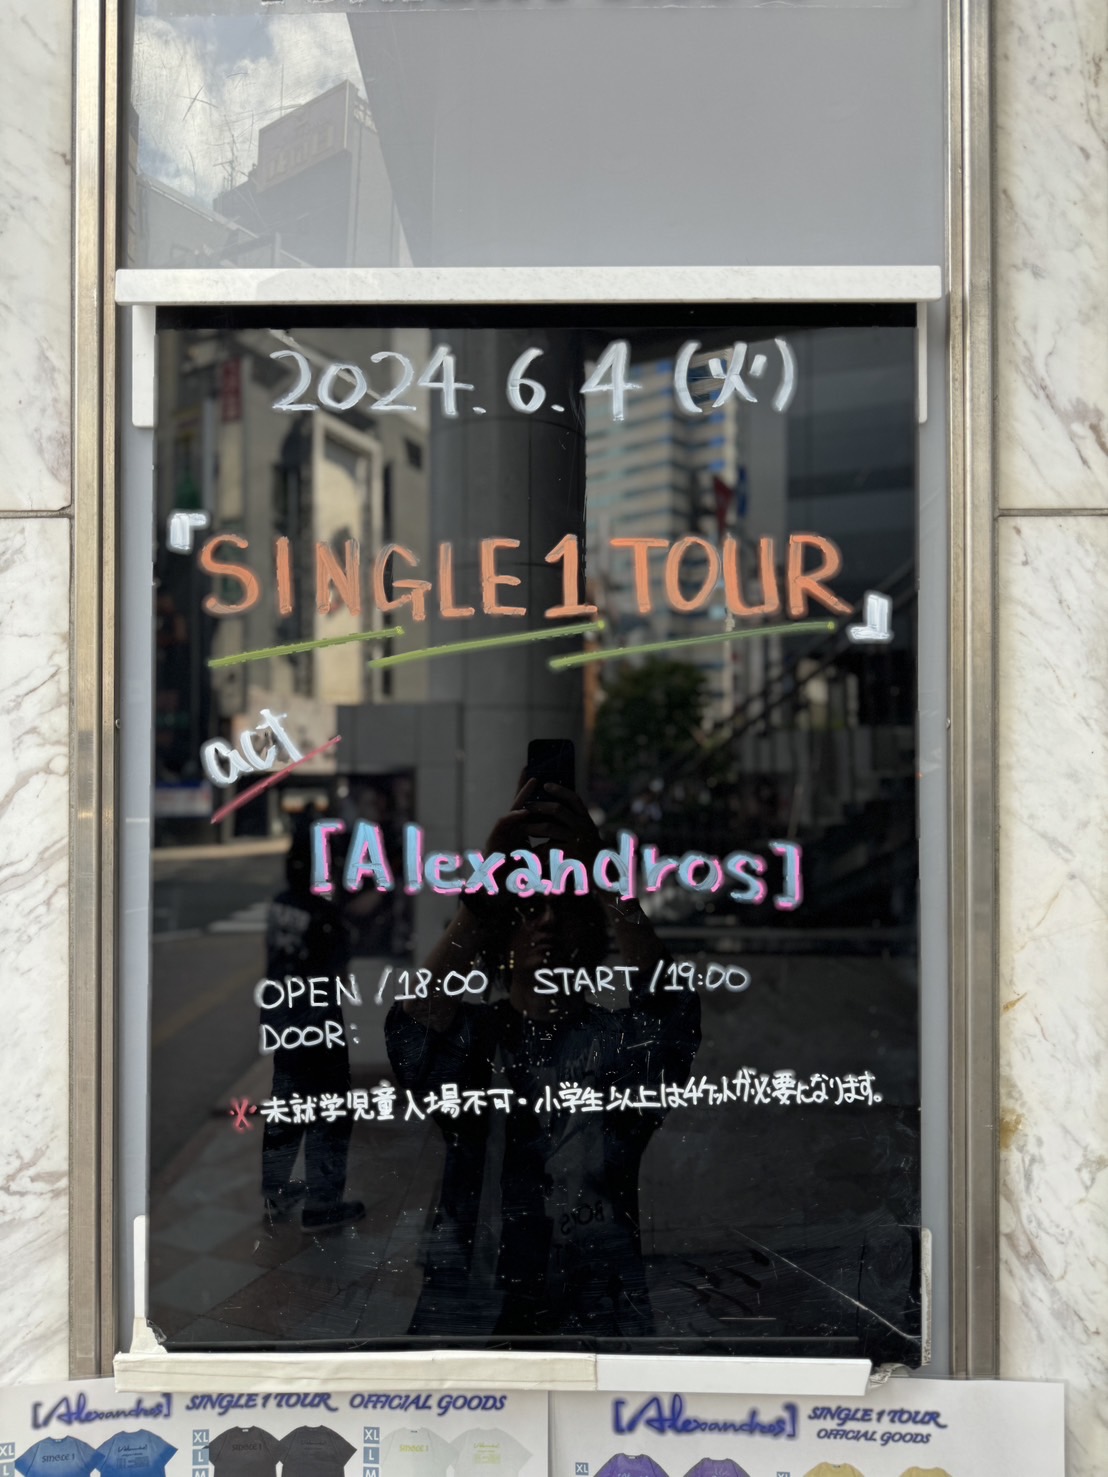 [Alexandros]のライブハウスツアー「SINGLE 1」ツアー初日で新宿loftにきました